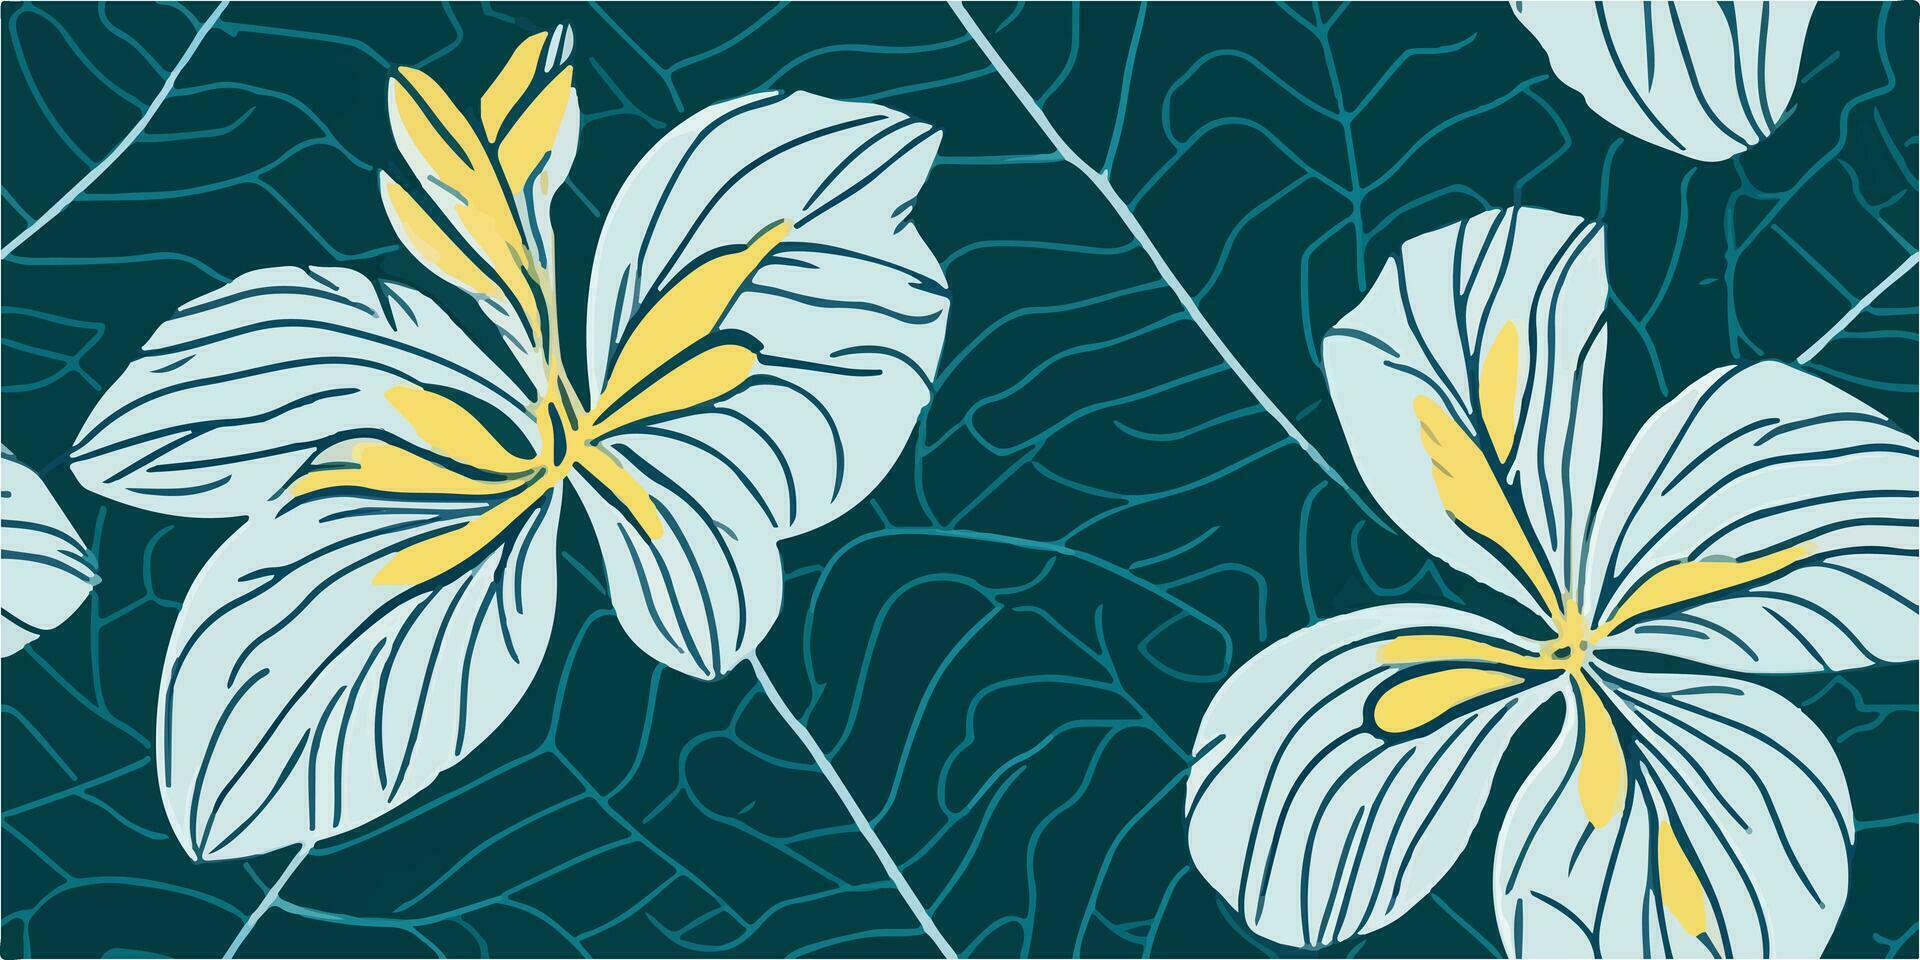 artístico susurros dibujado a mano frangipani flores patrones para tu verano obra de arte vector